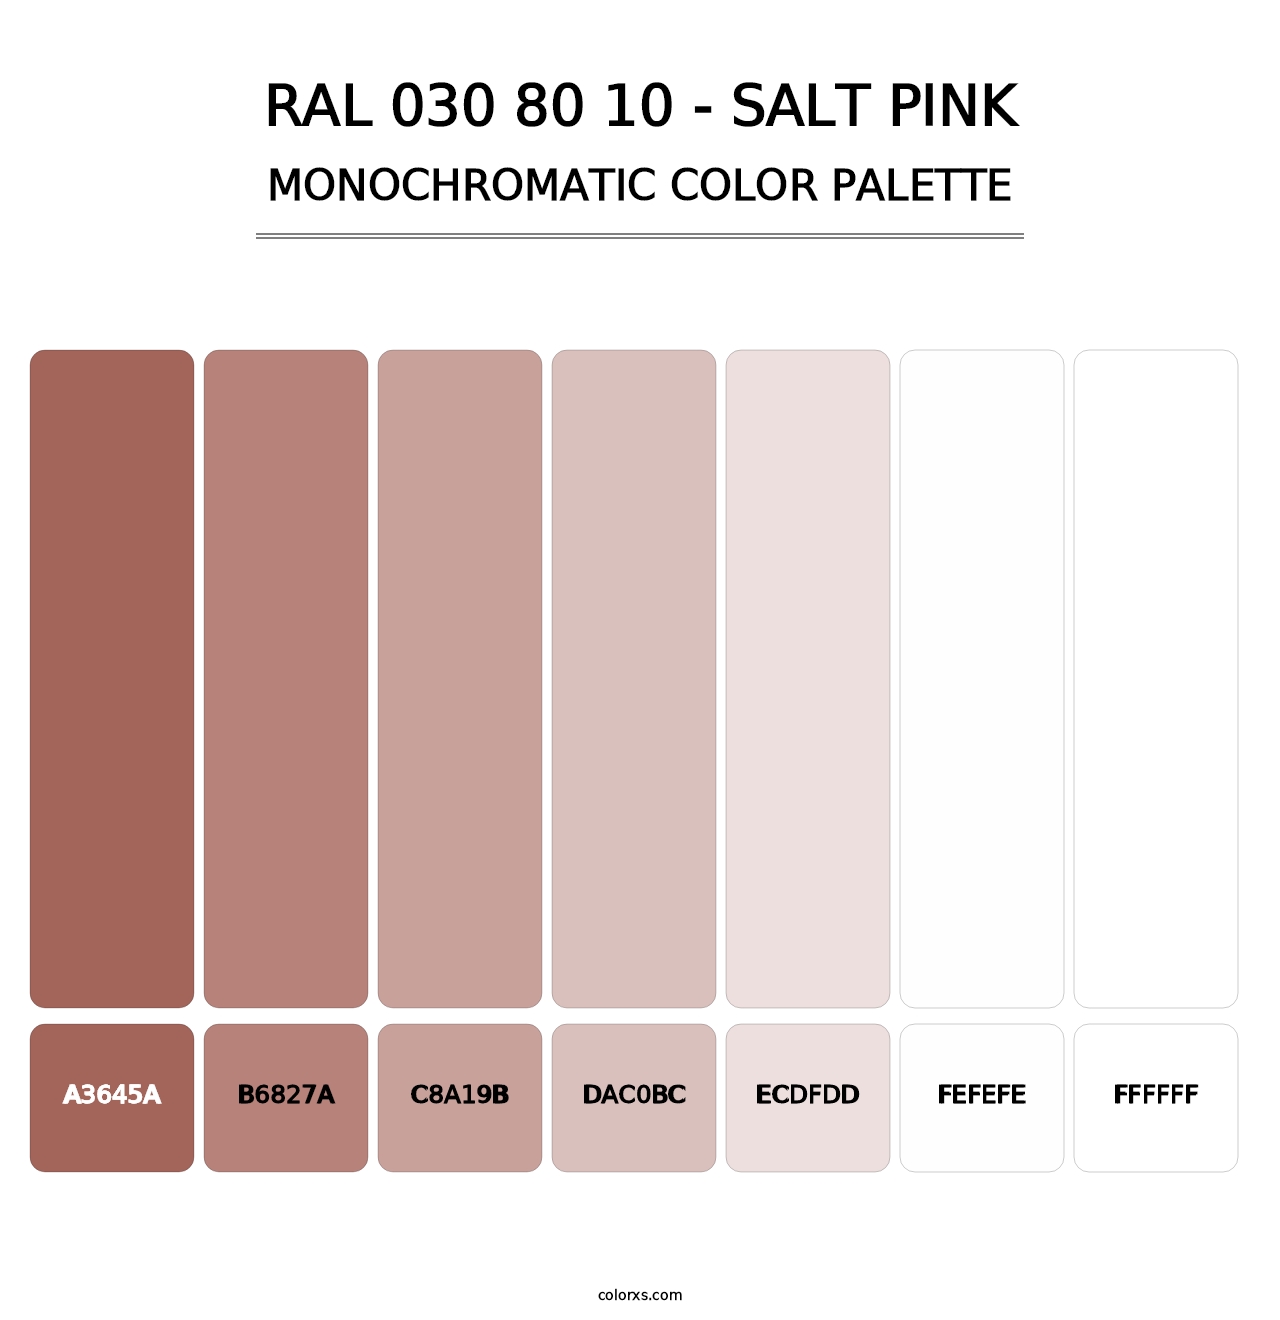 RAL 030 80 10 - Salt Pink - Monochromatic Color Palette